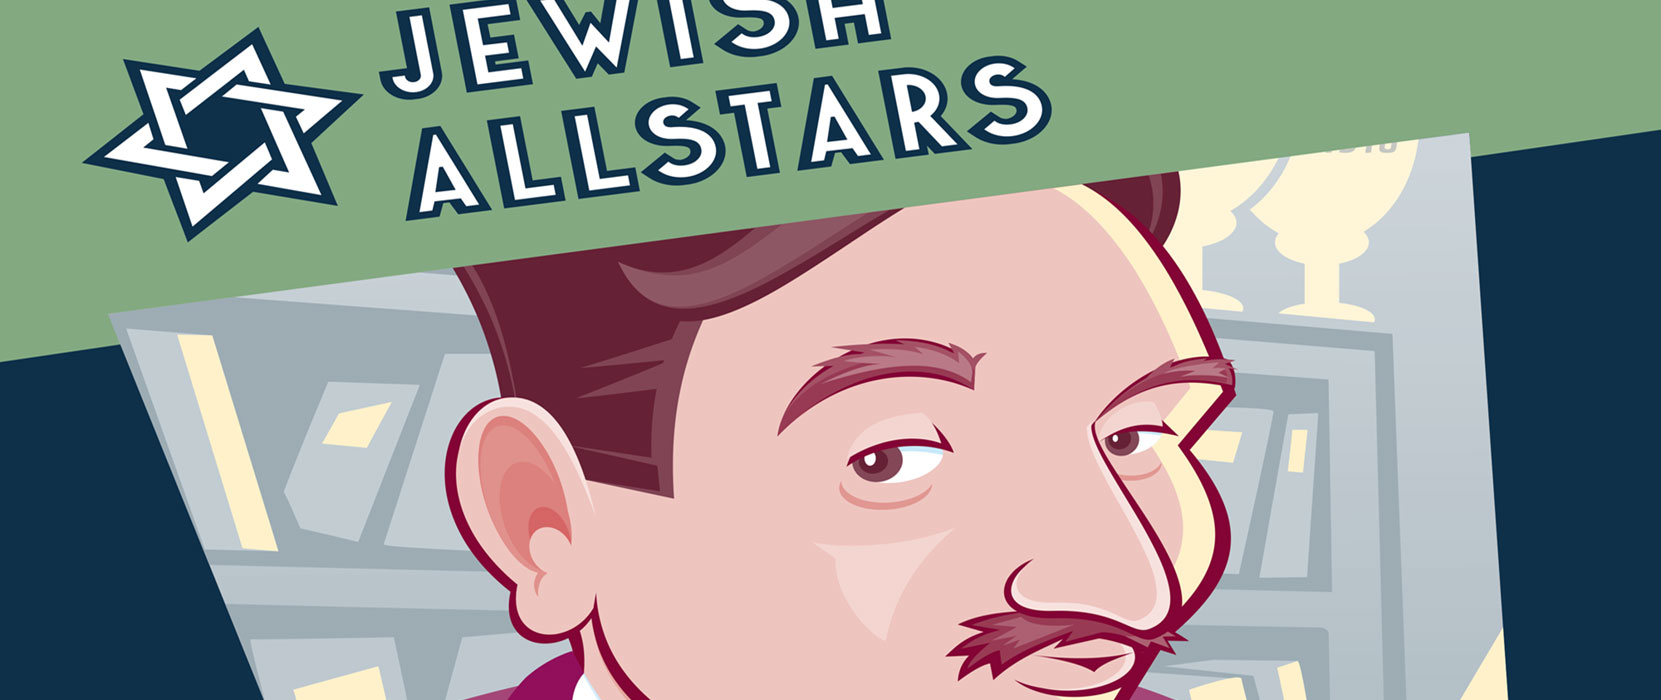 Jewish Allstars